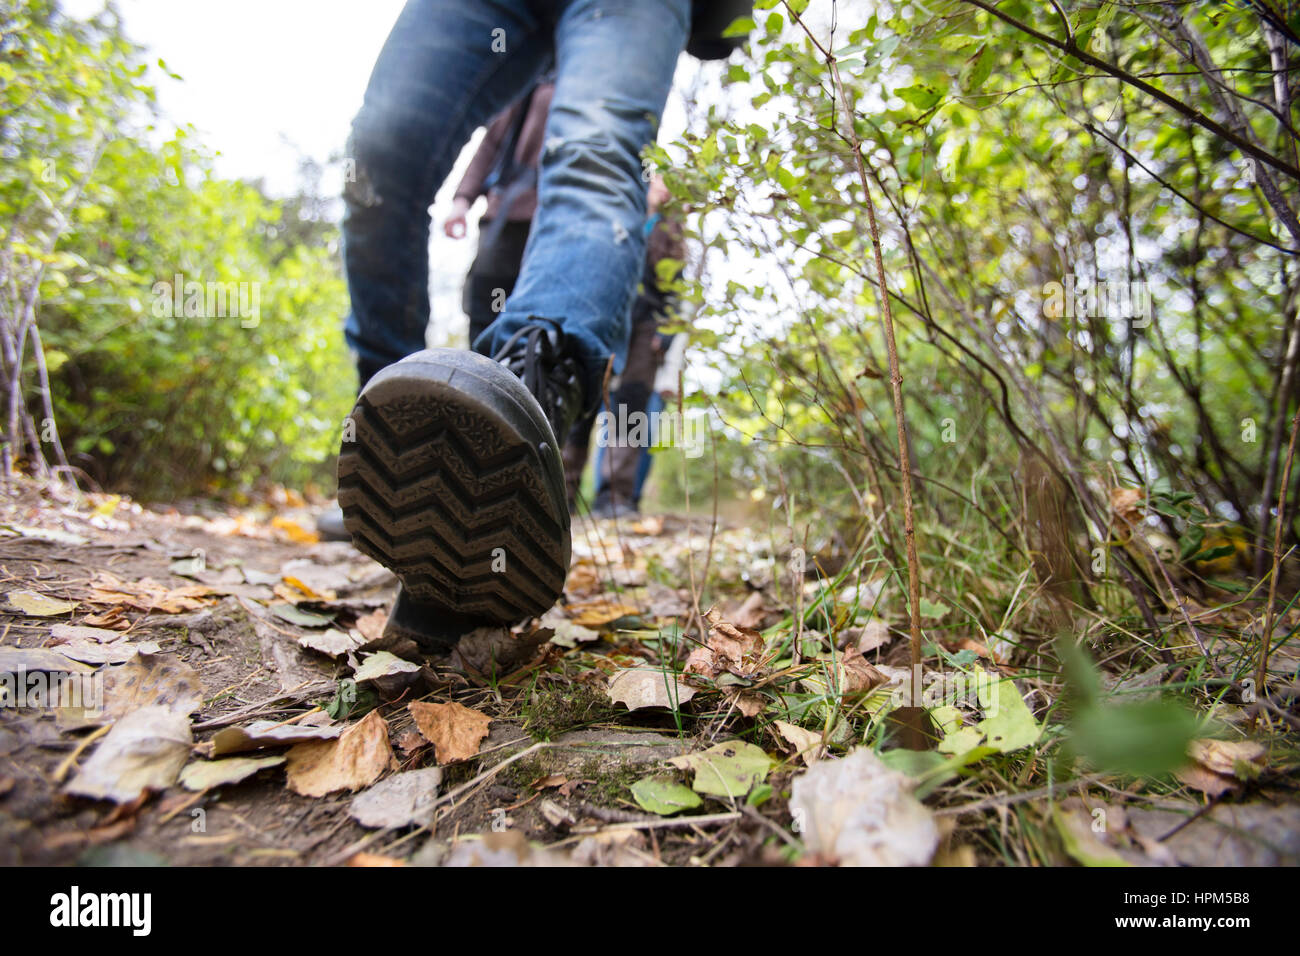 La section basse de l'homme portant des chaussures lors de votre randonnée sur sentier forestier Banque D'Images